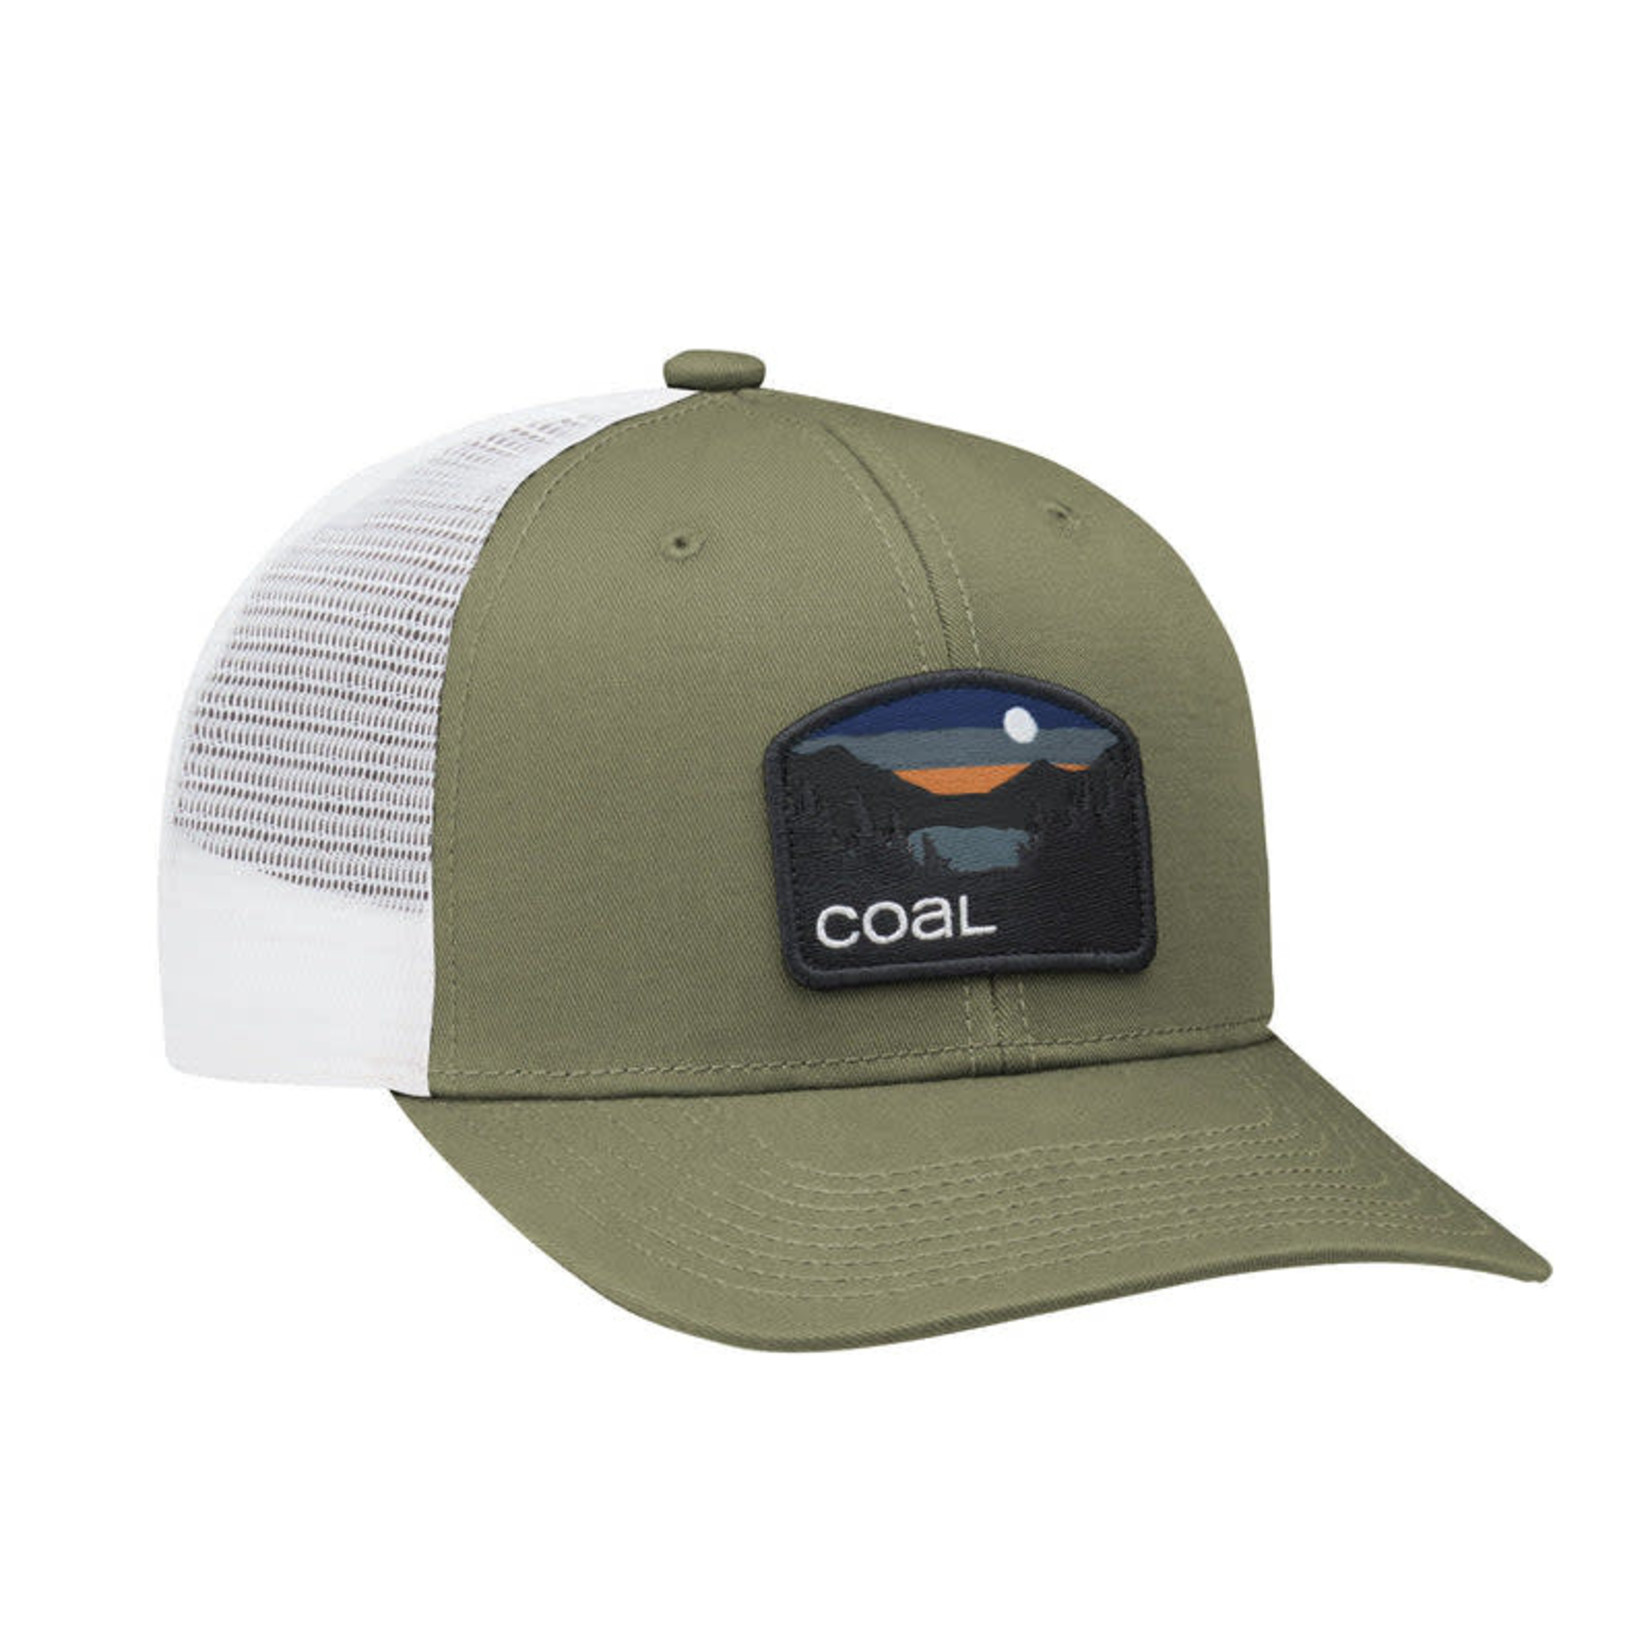 Coal Headwear Coal Hauer Low Hat - Olive